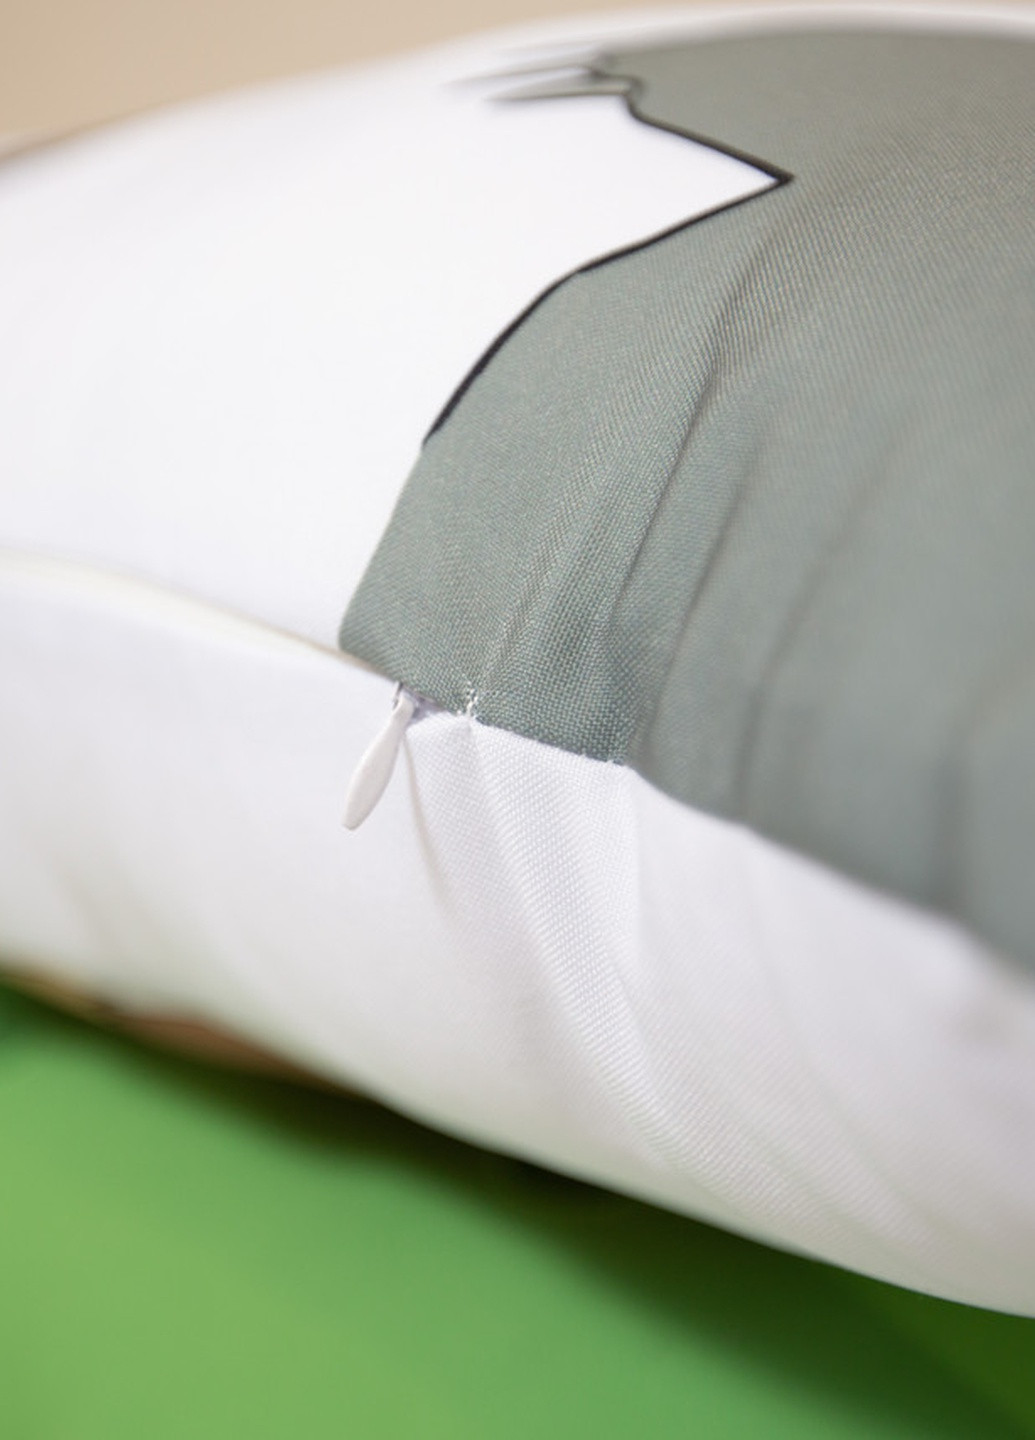 Подушка дакимакура Шибуя Рин хентай декоративная ростовая подушка для обнимания 60*200 No Brand (258989843)